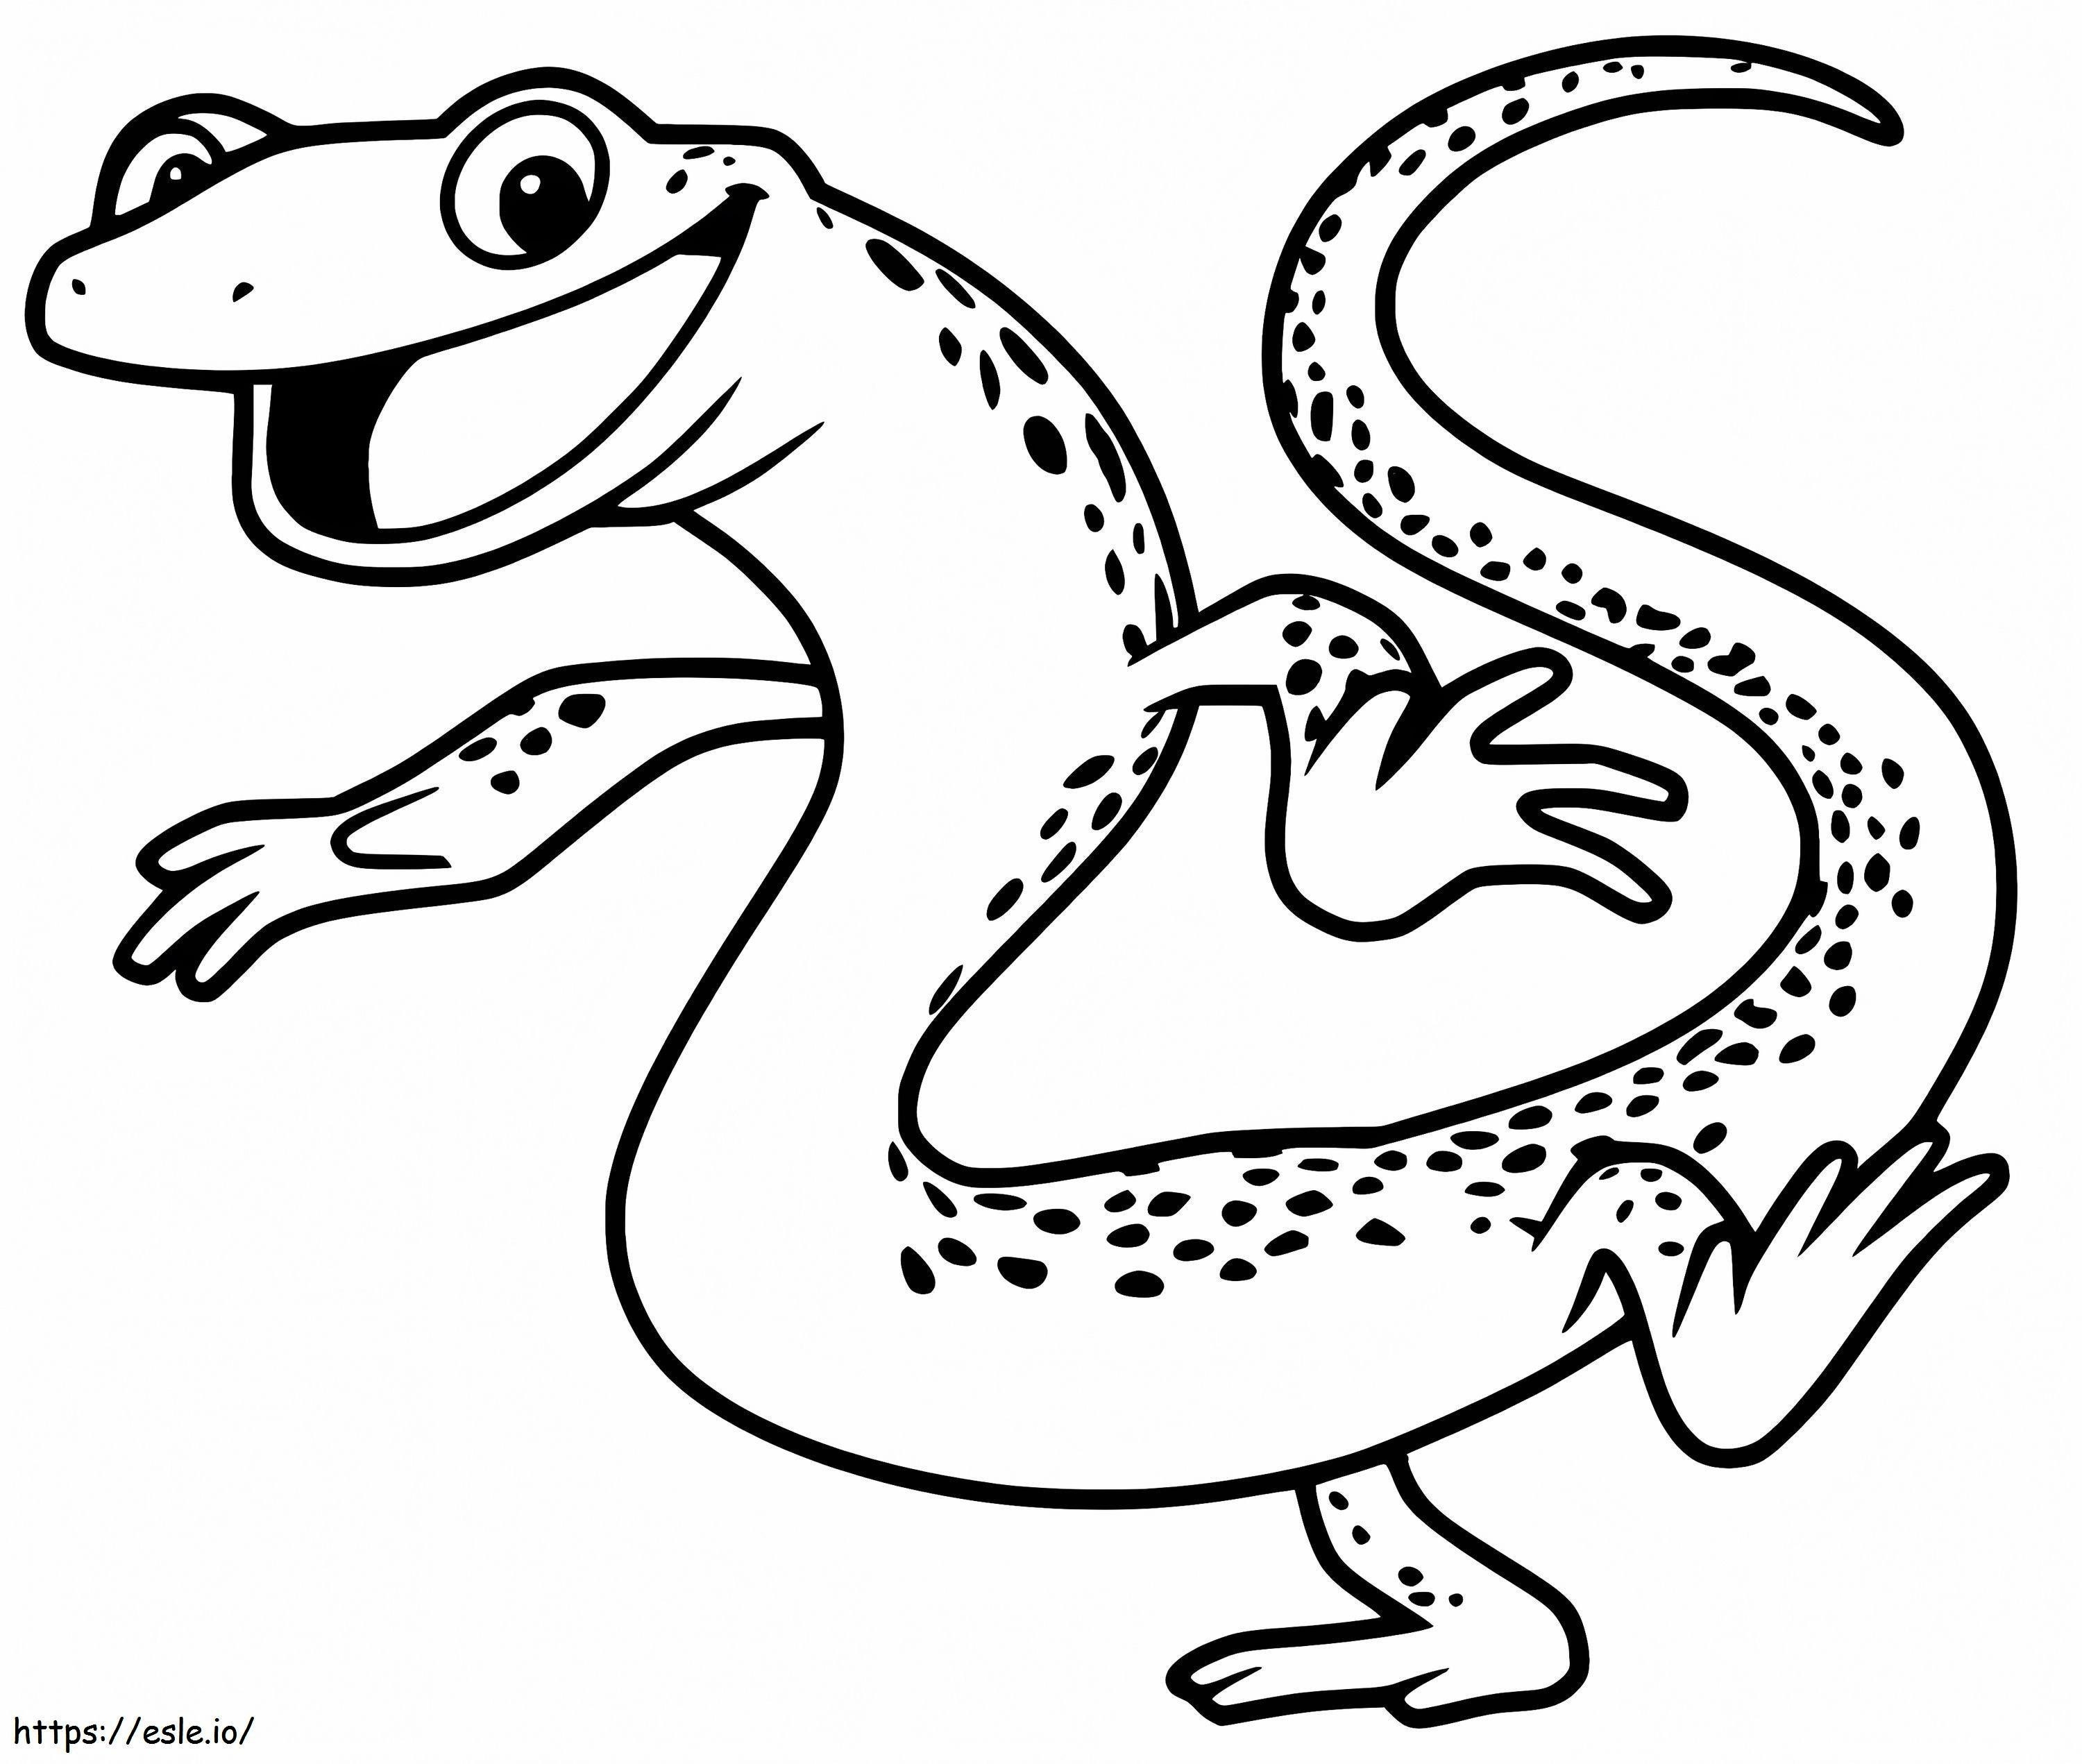 Salamandra dei cartoni animati da colorare